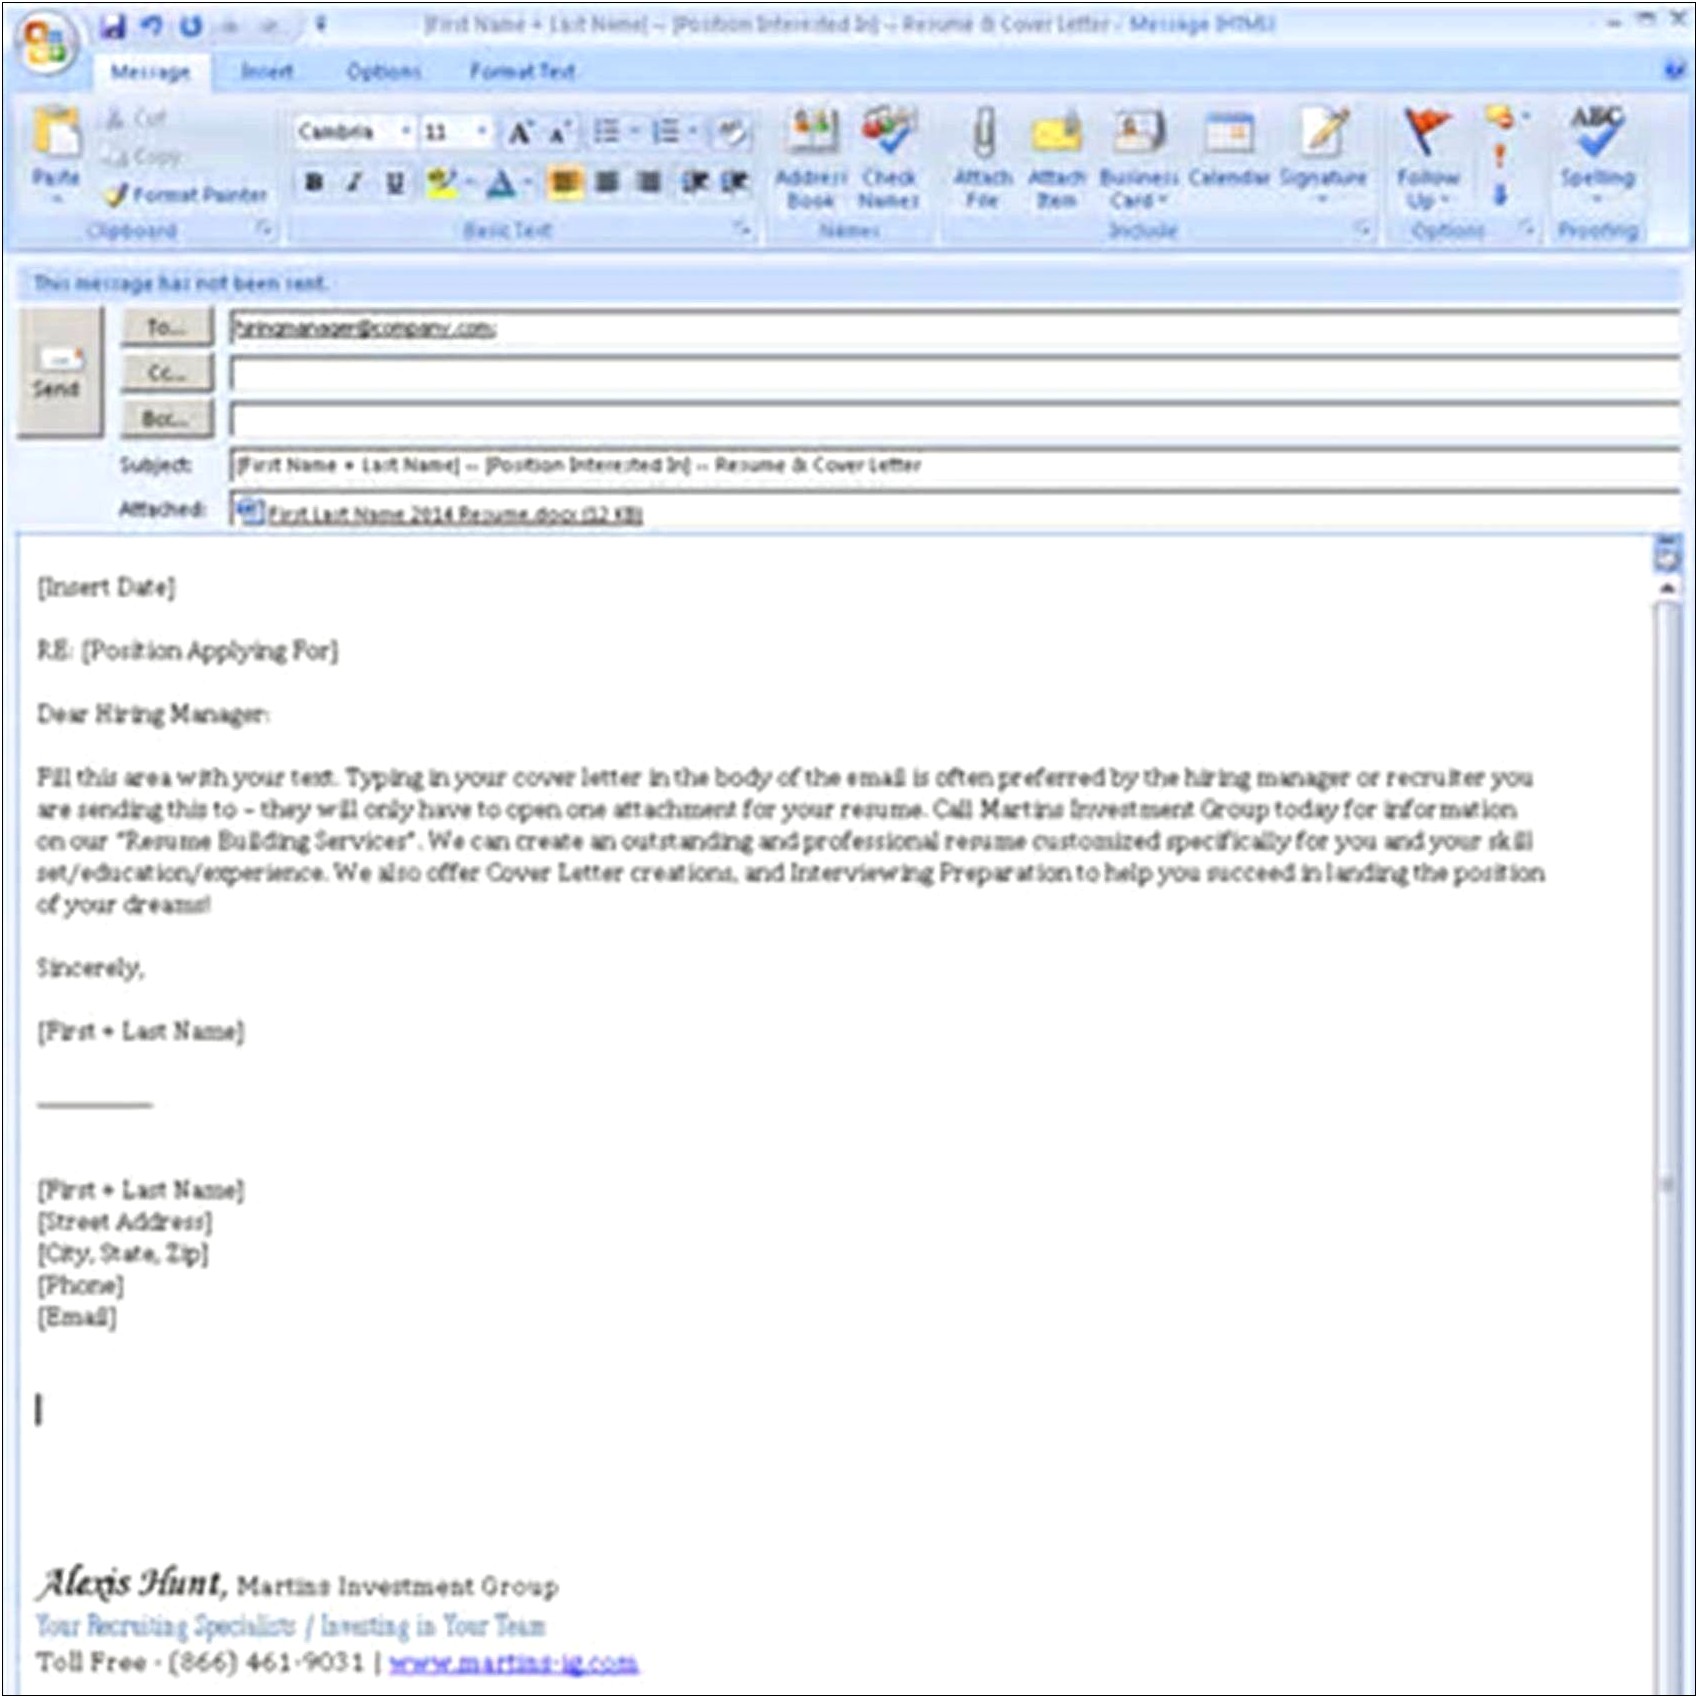 Sample Email Body Text For Sending Resume